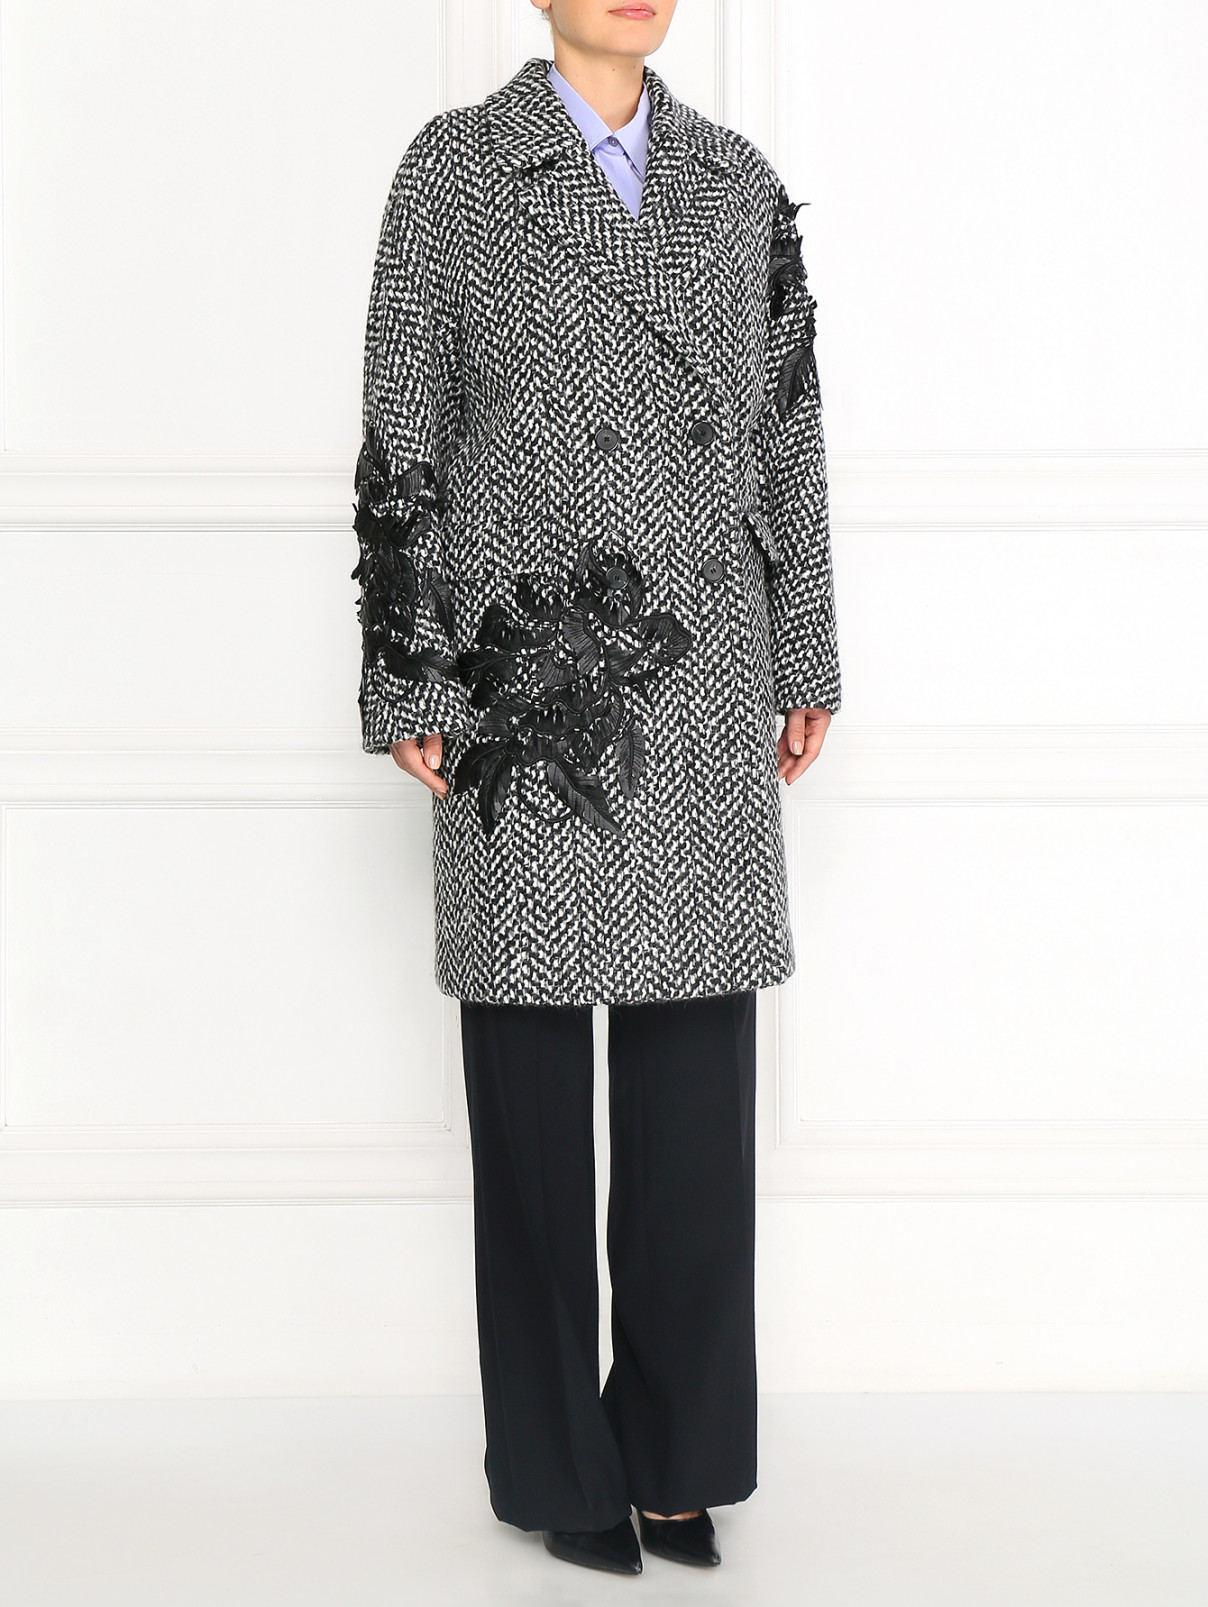 Пальто свободного кроя из шерсти декорированное вышивкой Ermanno Scervino  –  Модель Общий вид  – Цвет:  Узор